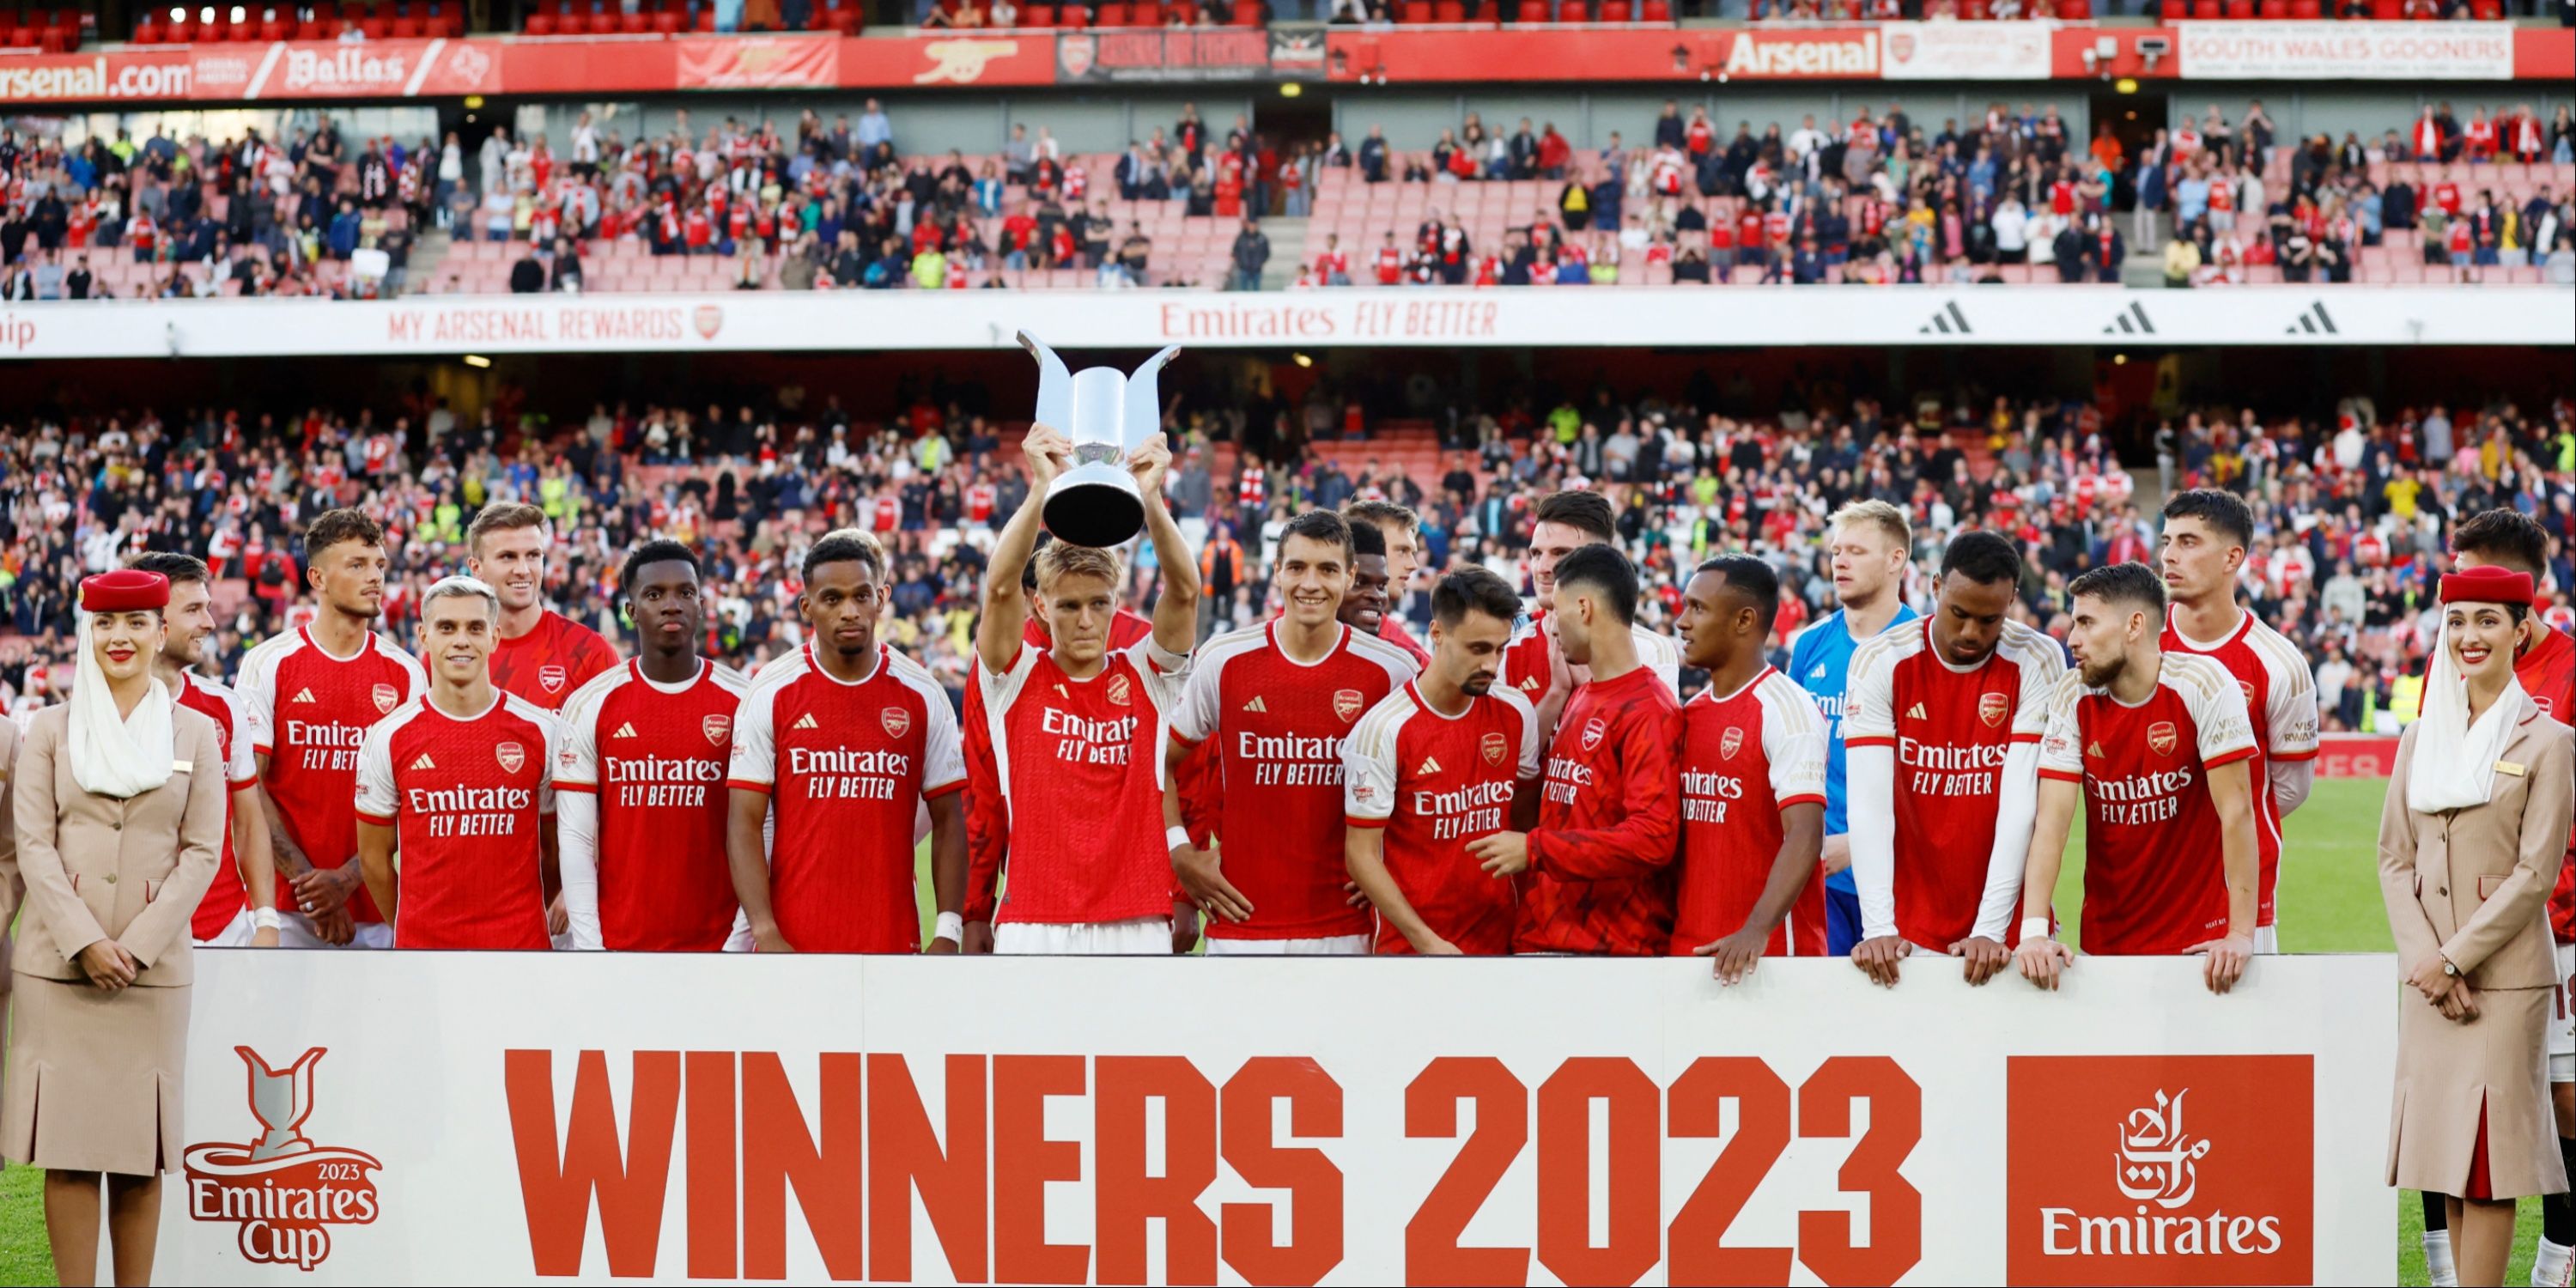 Arsenal-Emirates-Cup-Timber-Odegaard-Kiwior